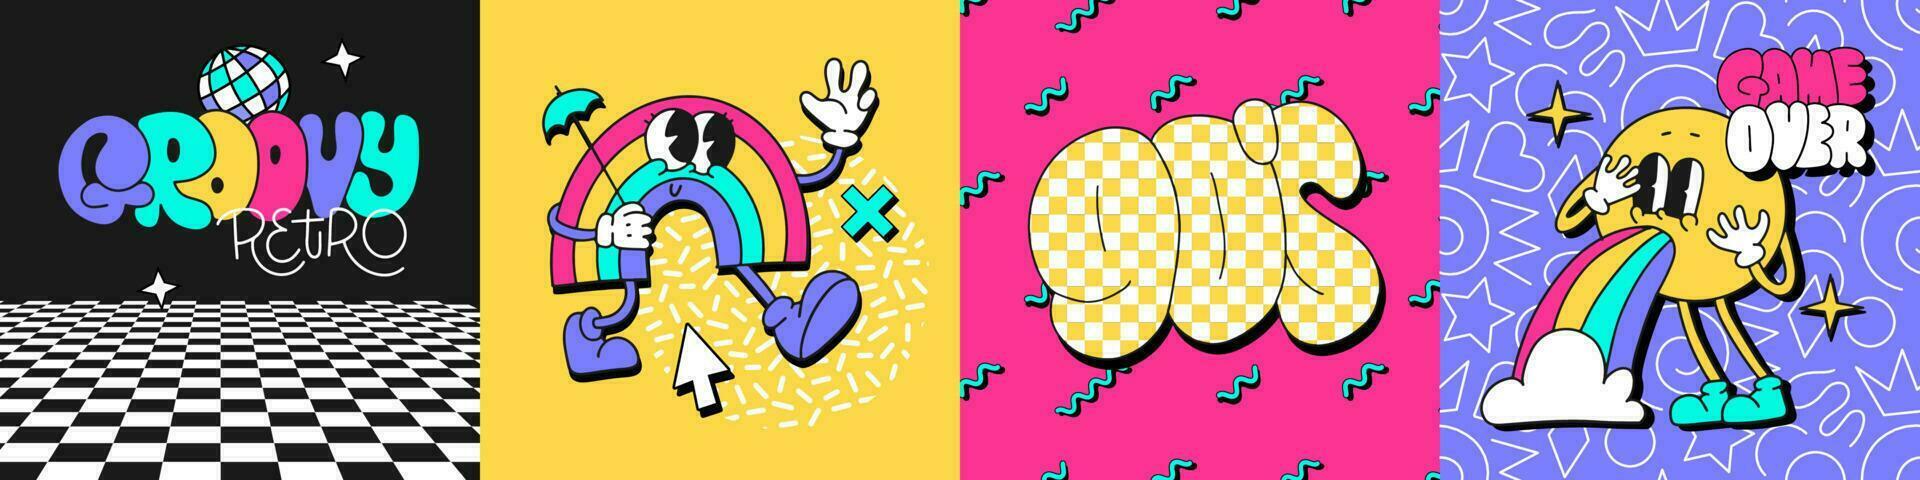 trendig retro fest fyrkant posters uppsättning med symboler av toons regnbåge karaktär, emoji, text 90s och disko retro häftig text. vektor banderoller med trendig 80-00-tal komisk plåster.